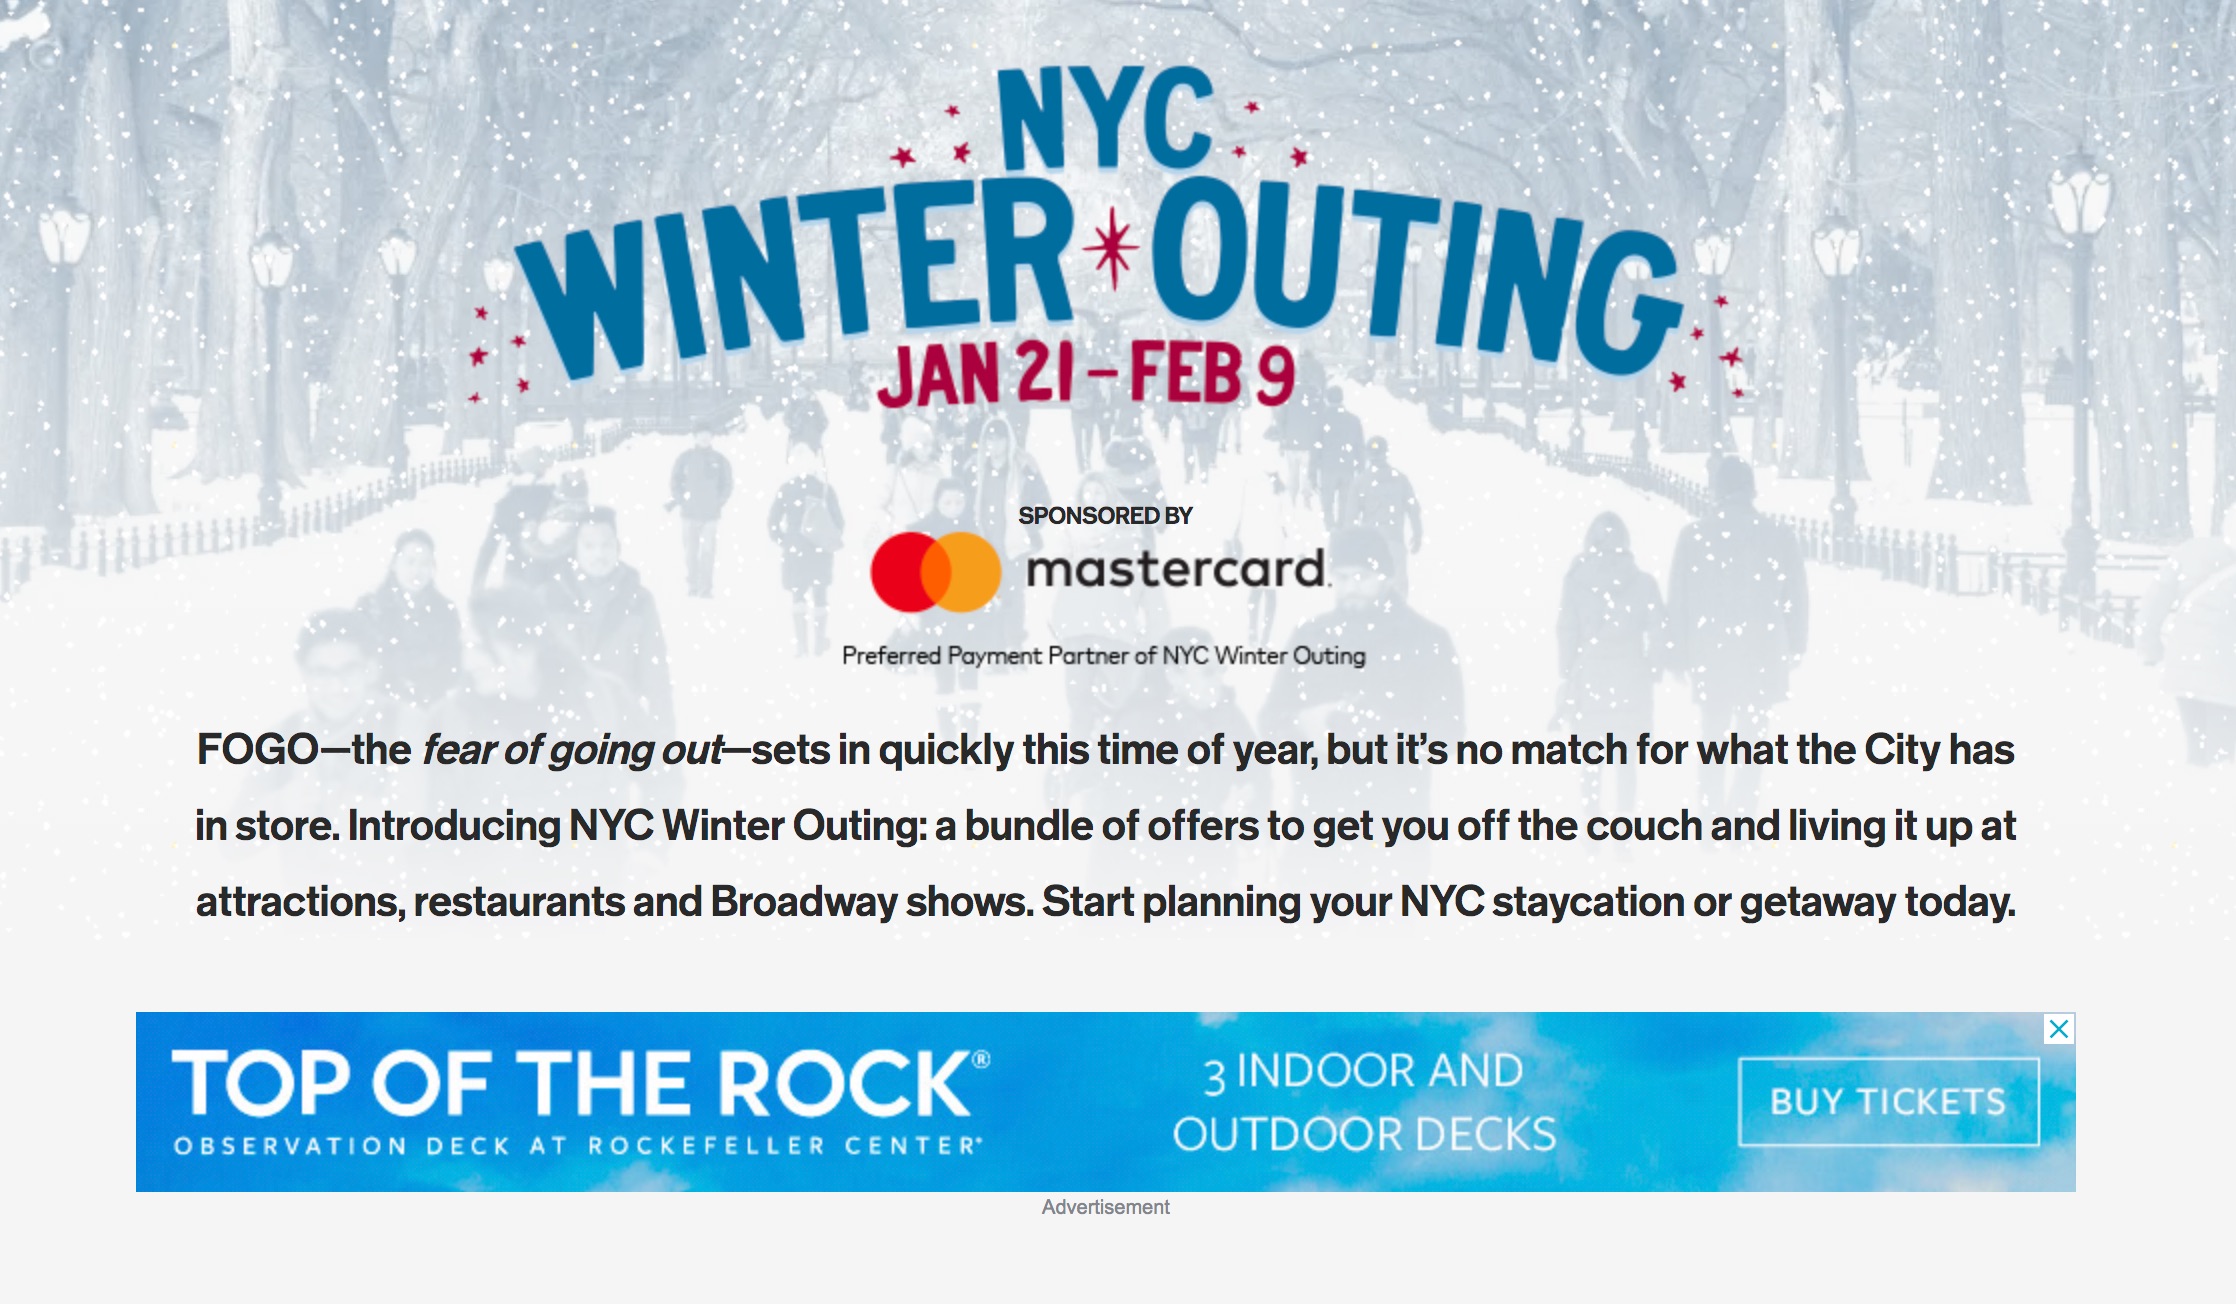 ニューヨーク市、冬の観光客誘致キャンペーンを展開、ブロードウェイ公演やレストランの割引など